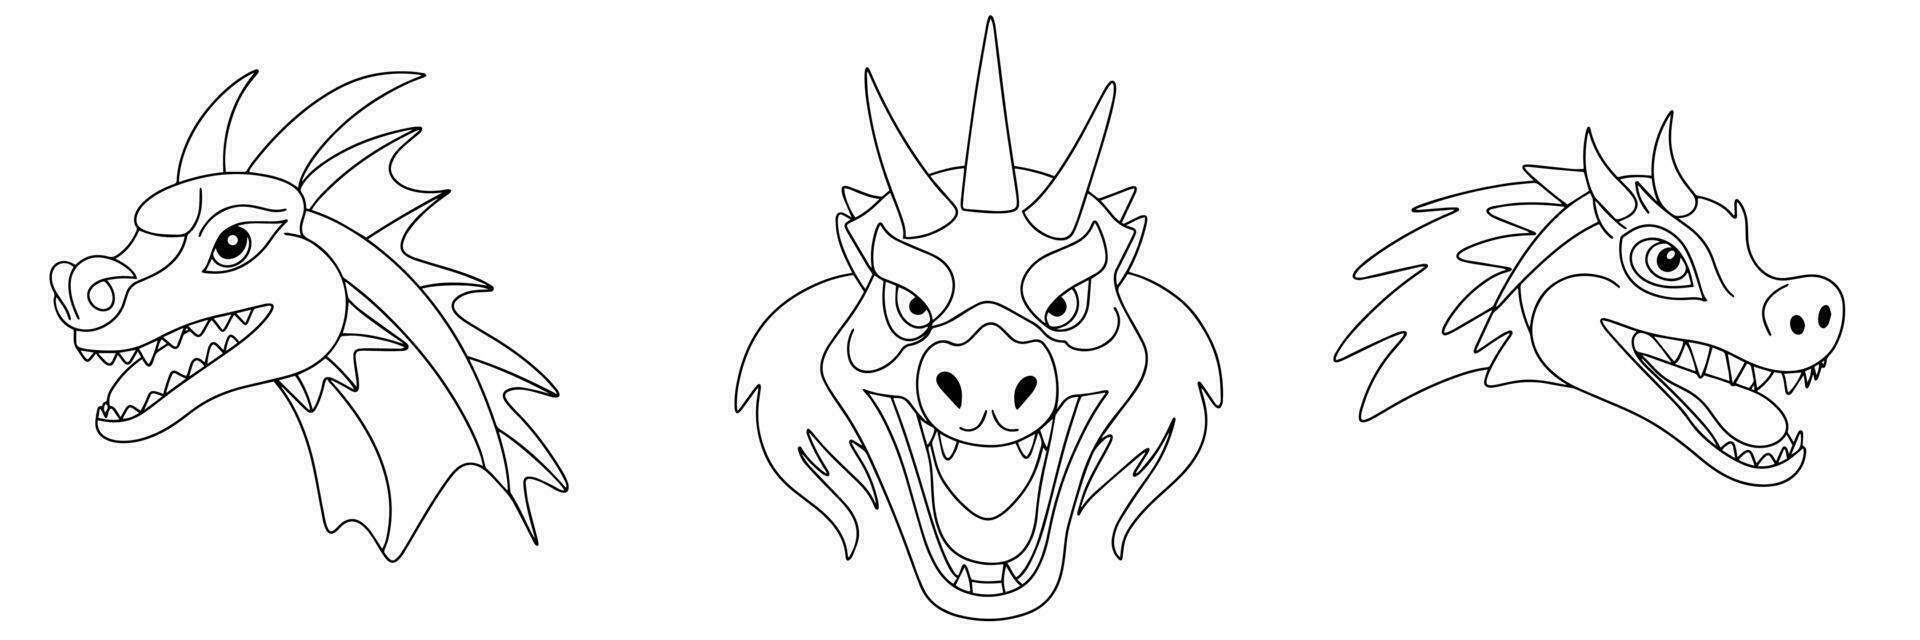 scarabocchio di drago testa. impostato di Drago testa schema. mano disegnato di drago teste nel scarabocchio stile. vettore illustrazione.